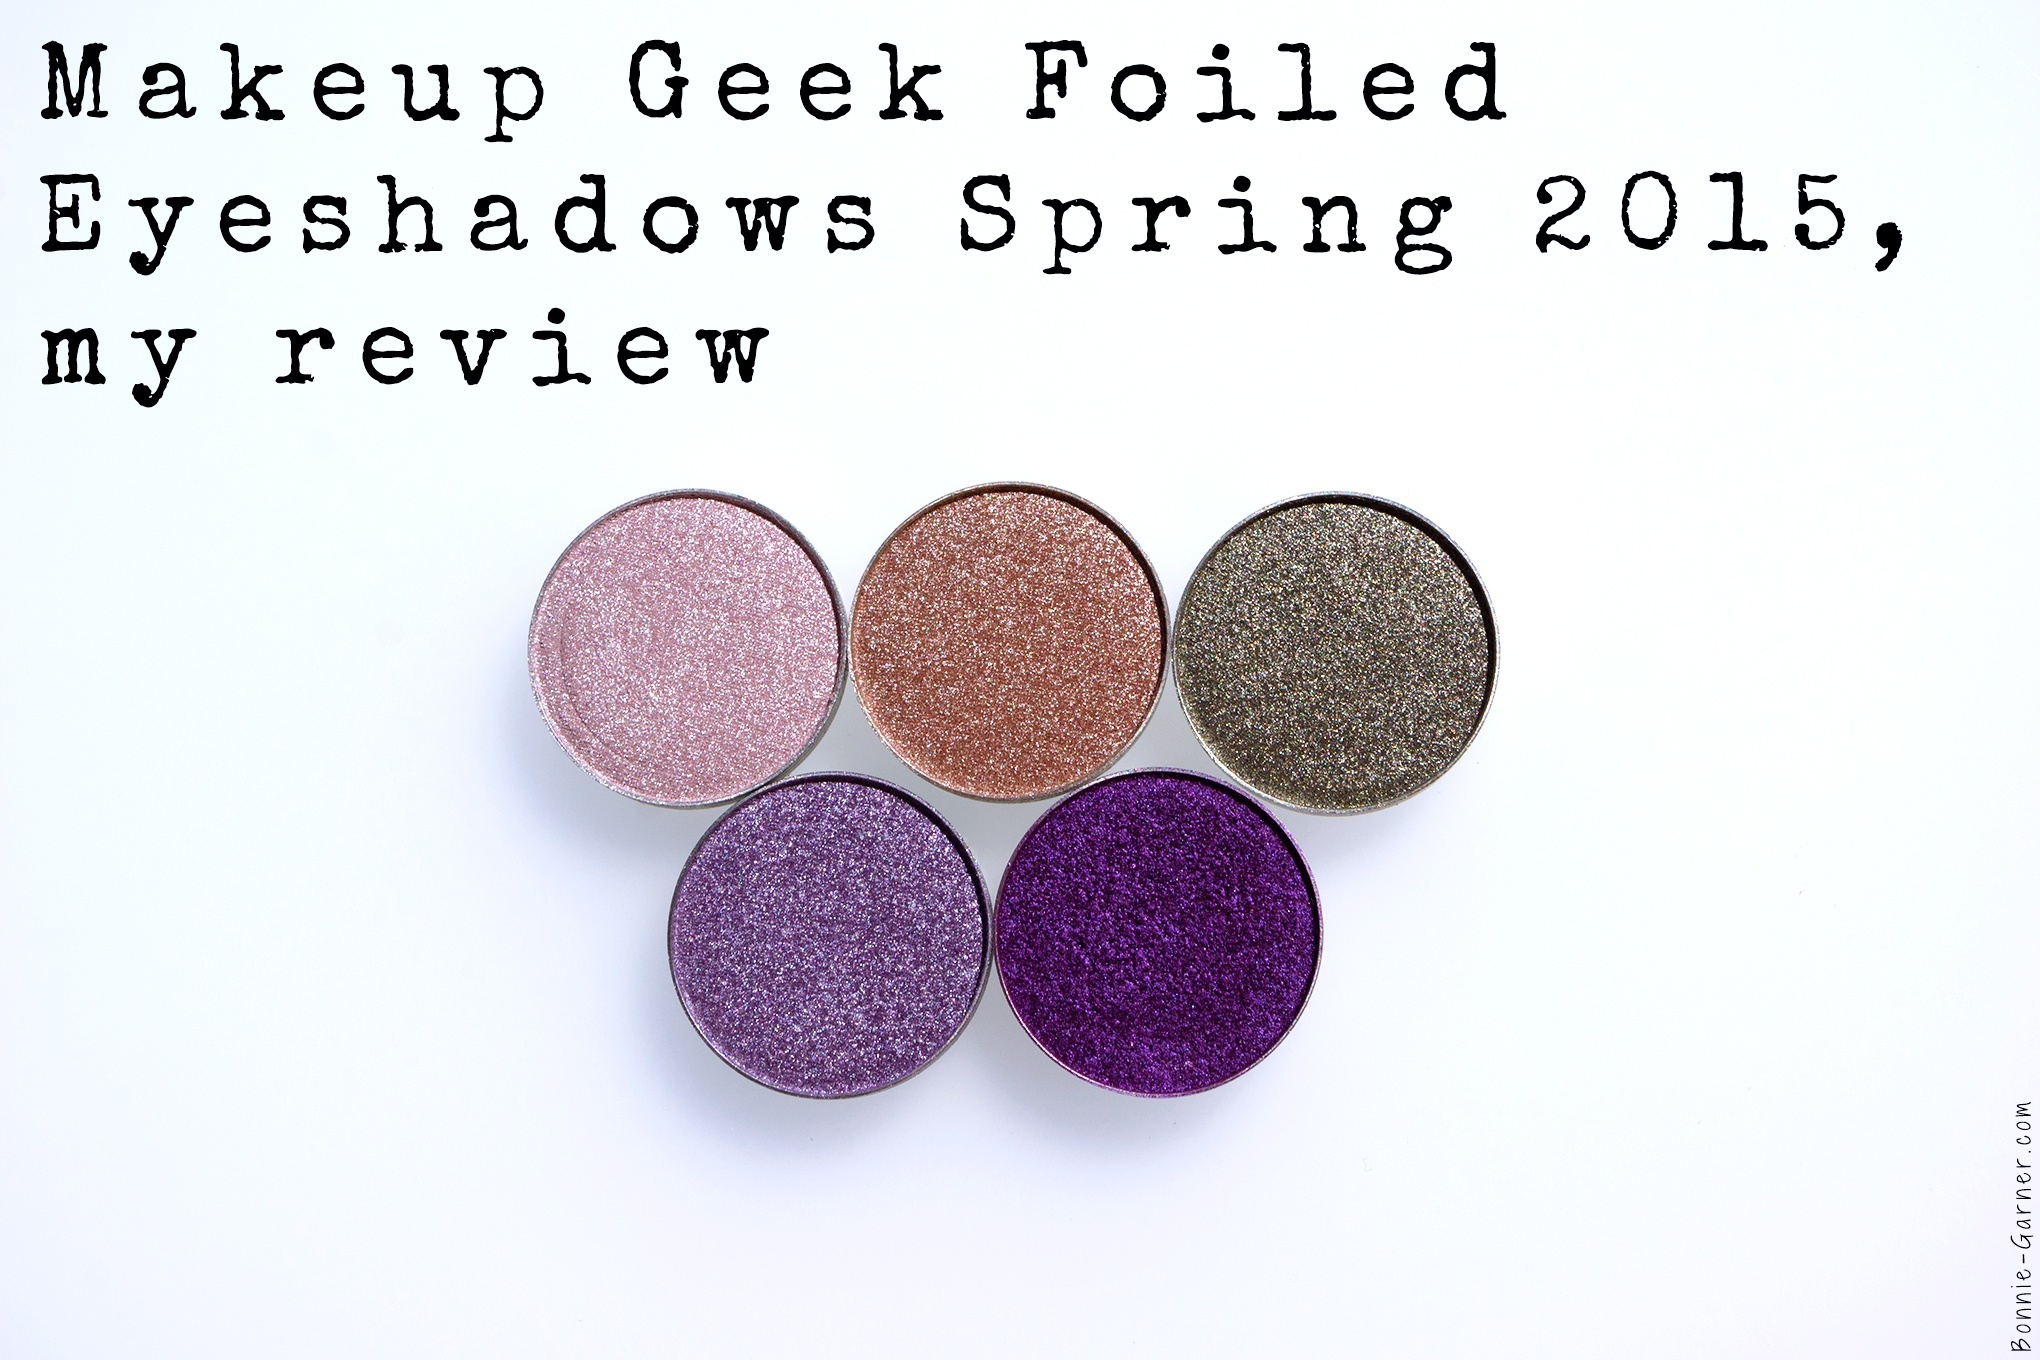 Makeup Geek Foiled eyeshadows Spring 2015, my review